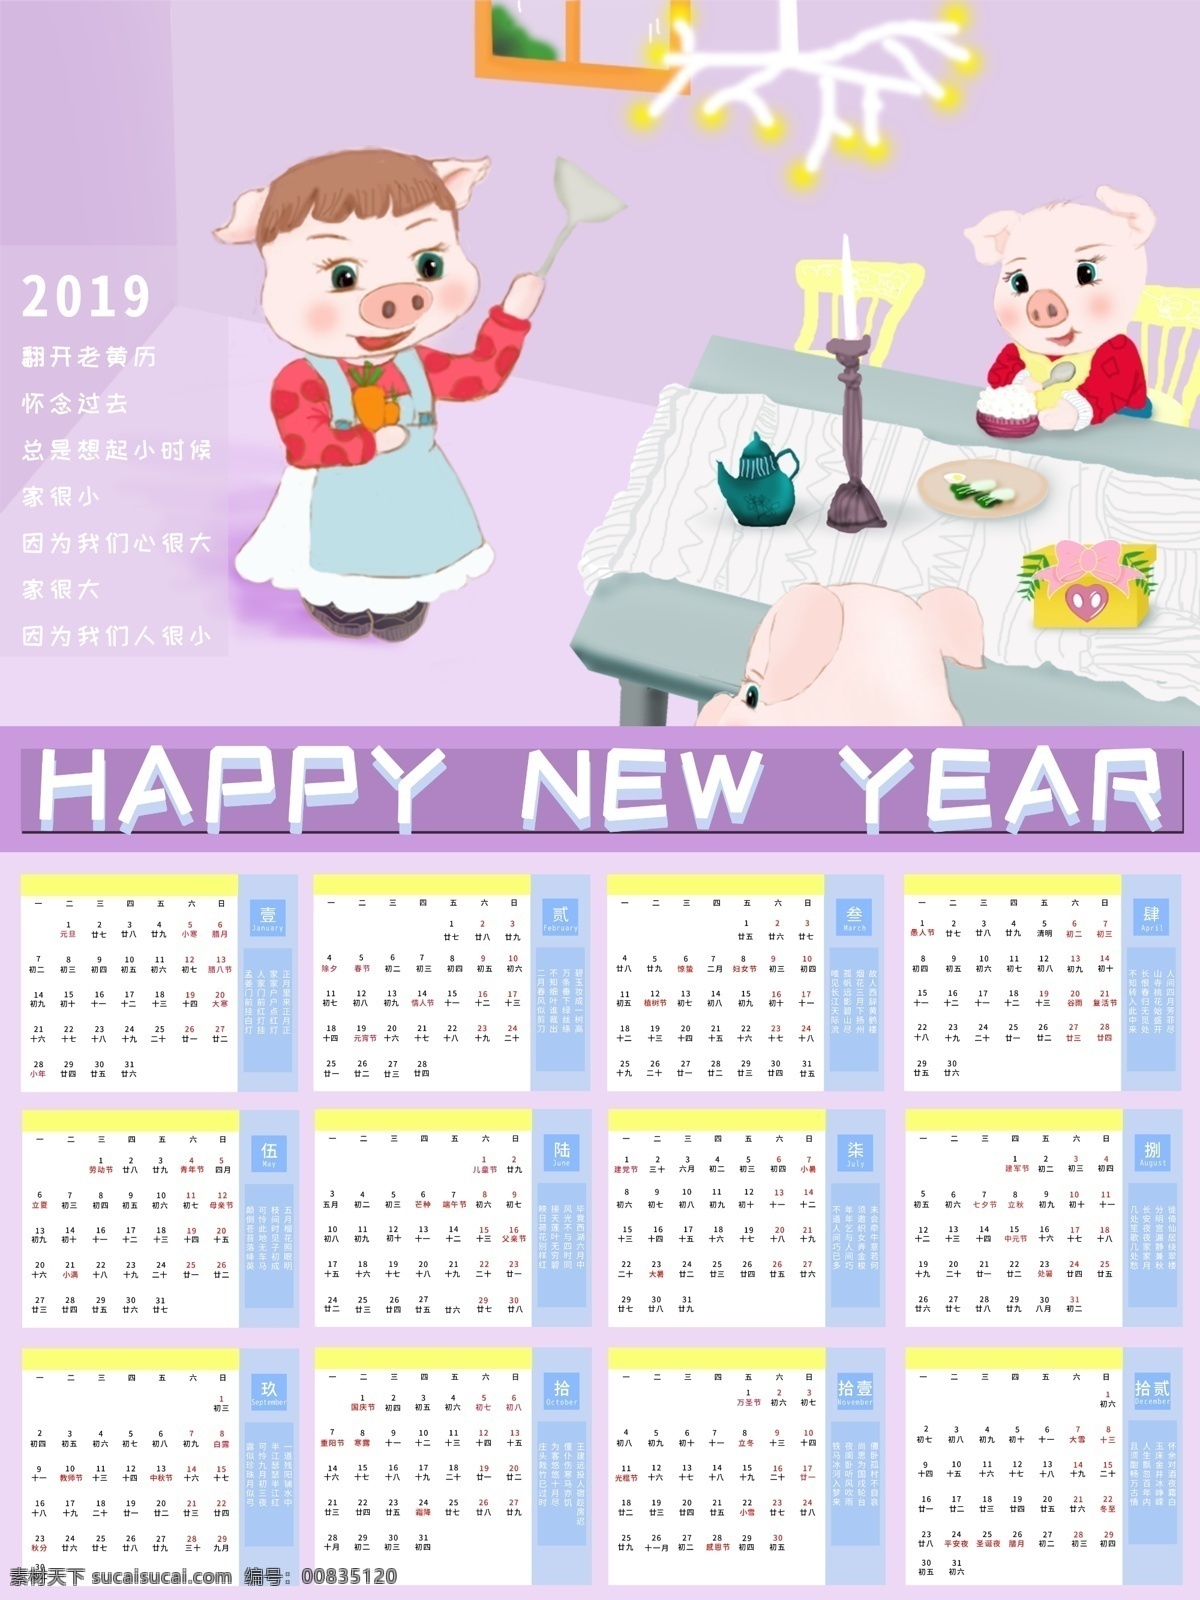 原创 2019 猪年 月历 手绘 海报 happy new year 2019月历 猪年月历